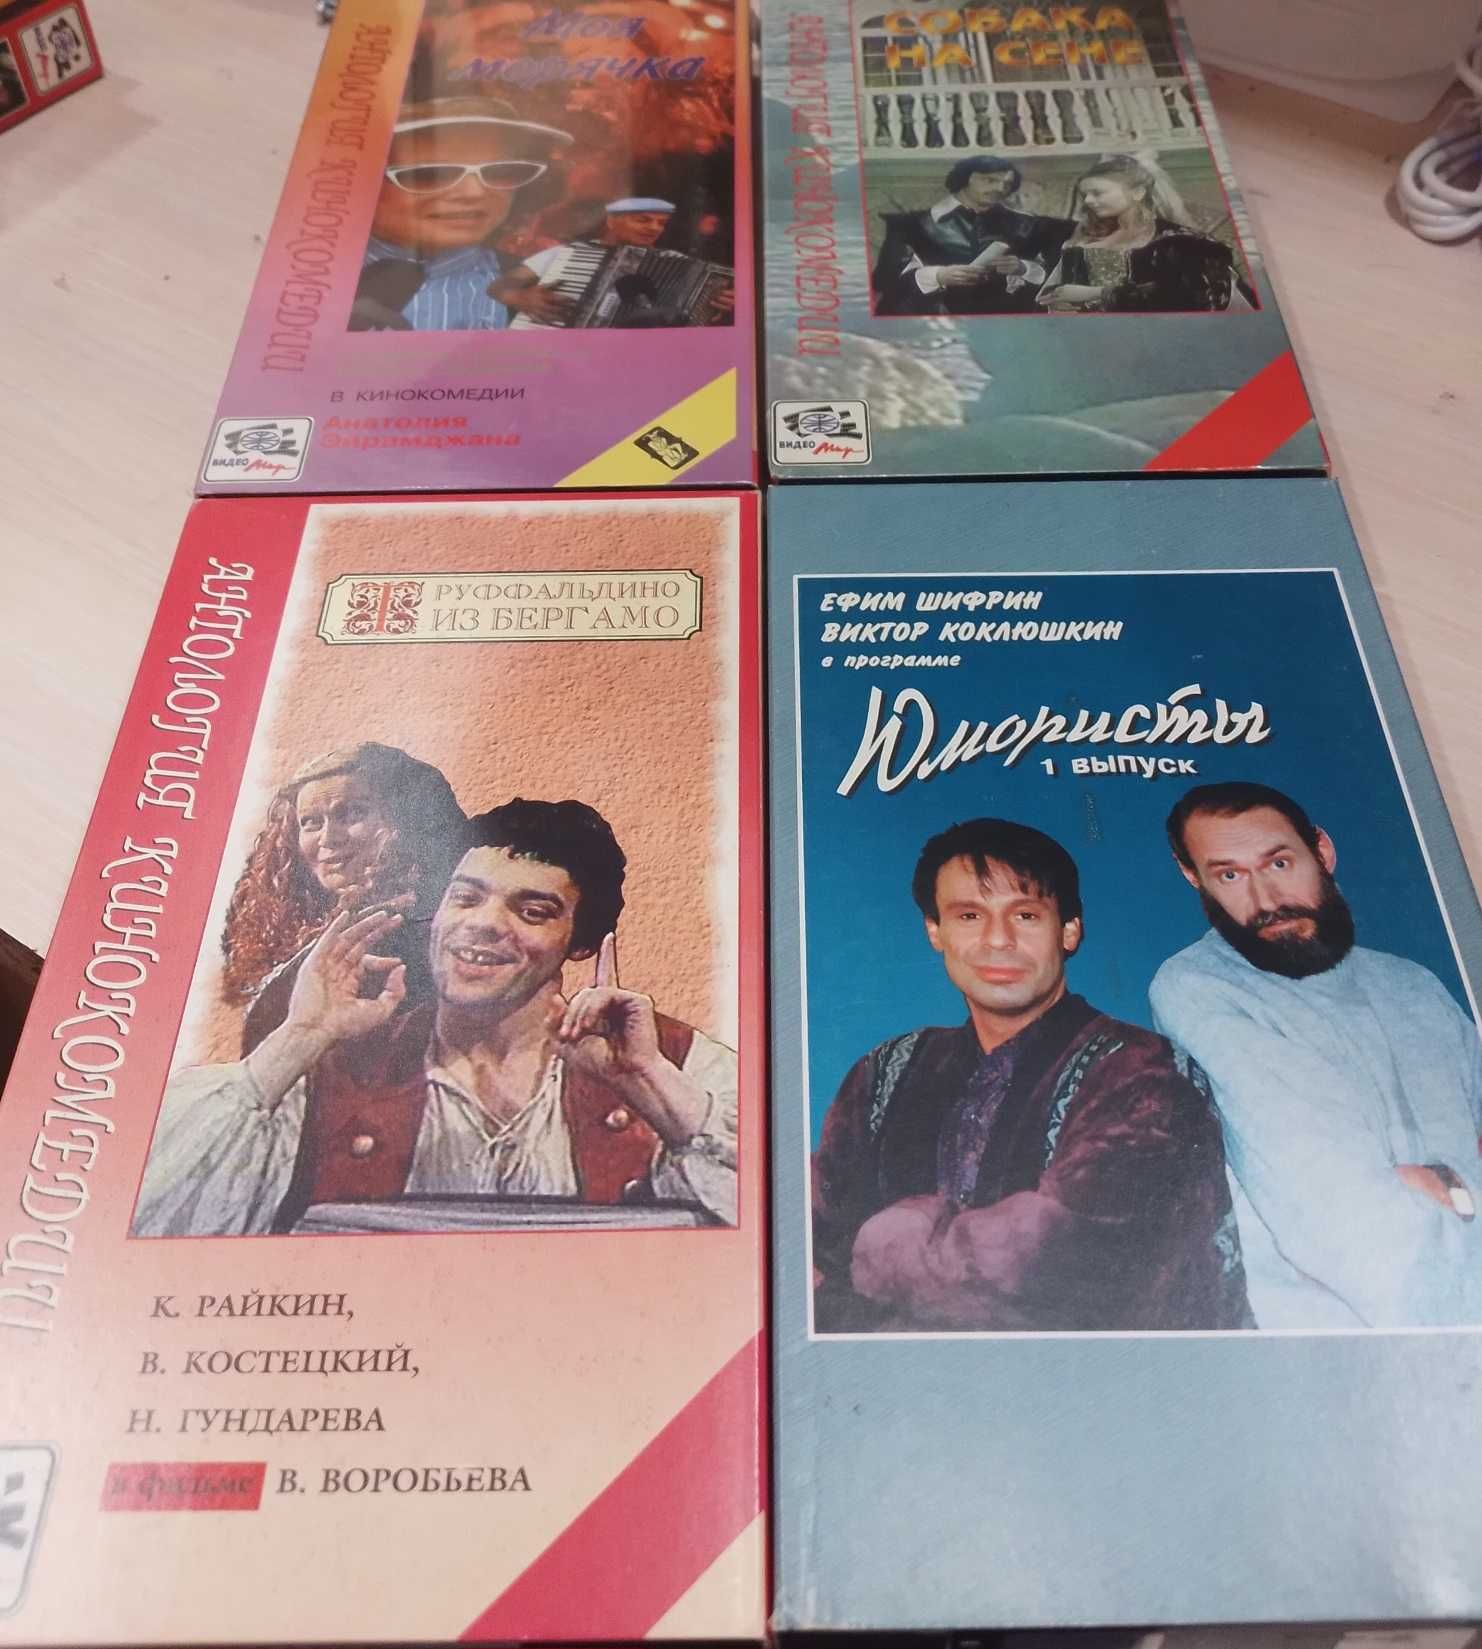 Подборка видеокассет с хорошими фильмами VHS лицензия 71 шт